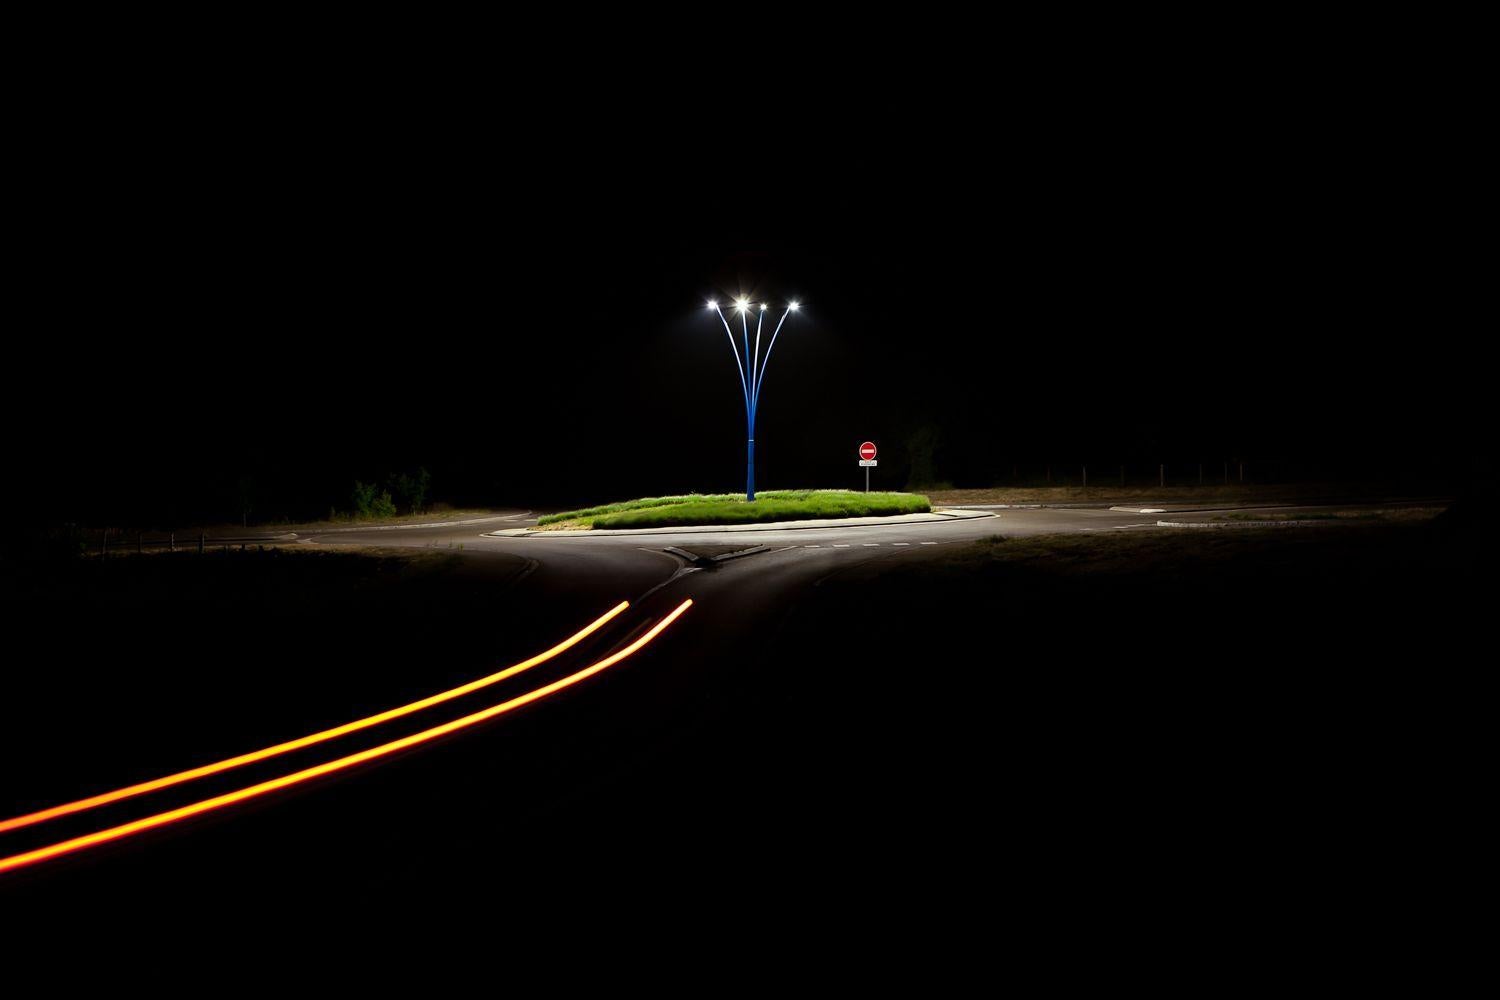 Isola von Xavier Dumoulin - Zeitgenössische Nachtfotografie, dunkle Straße